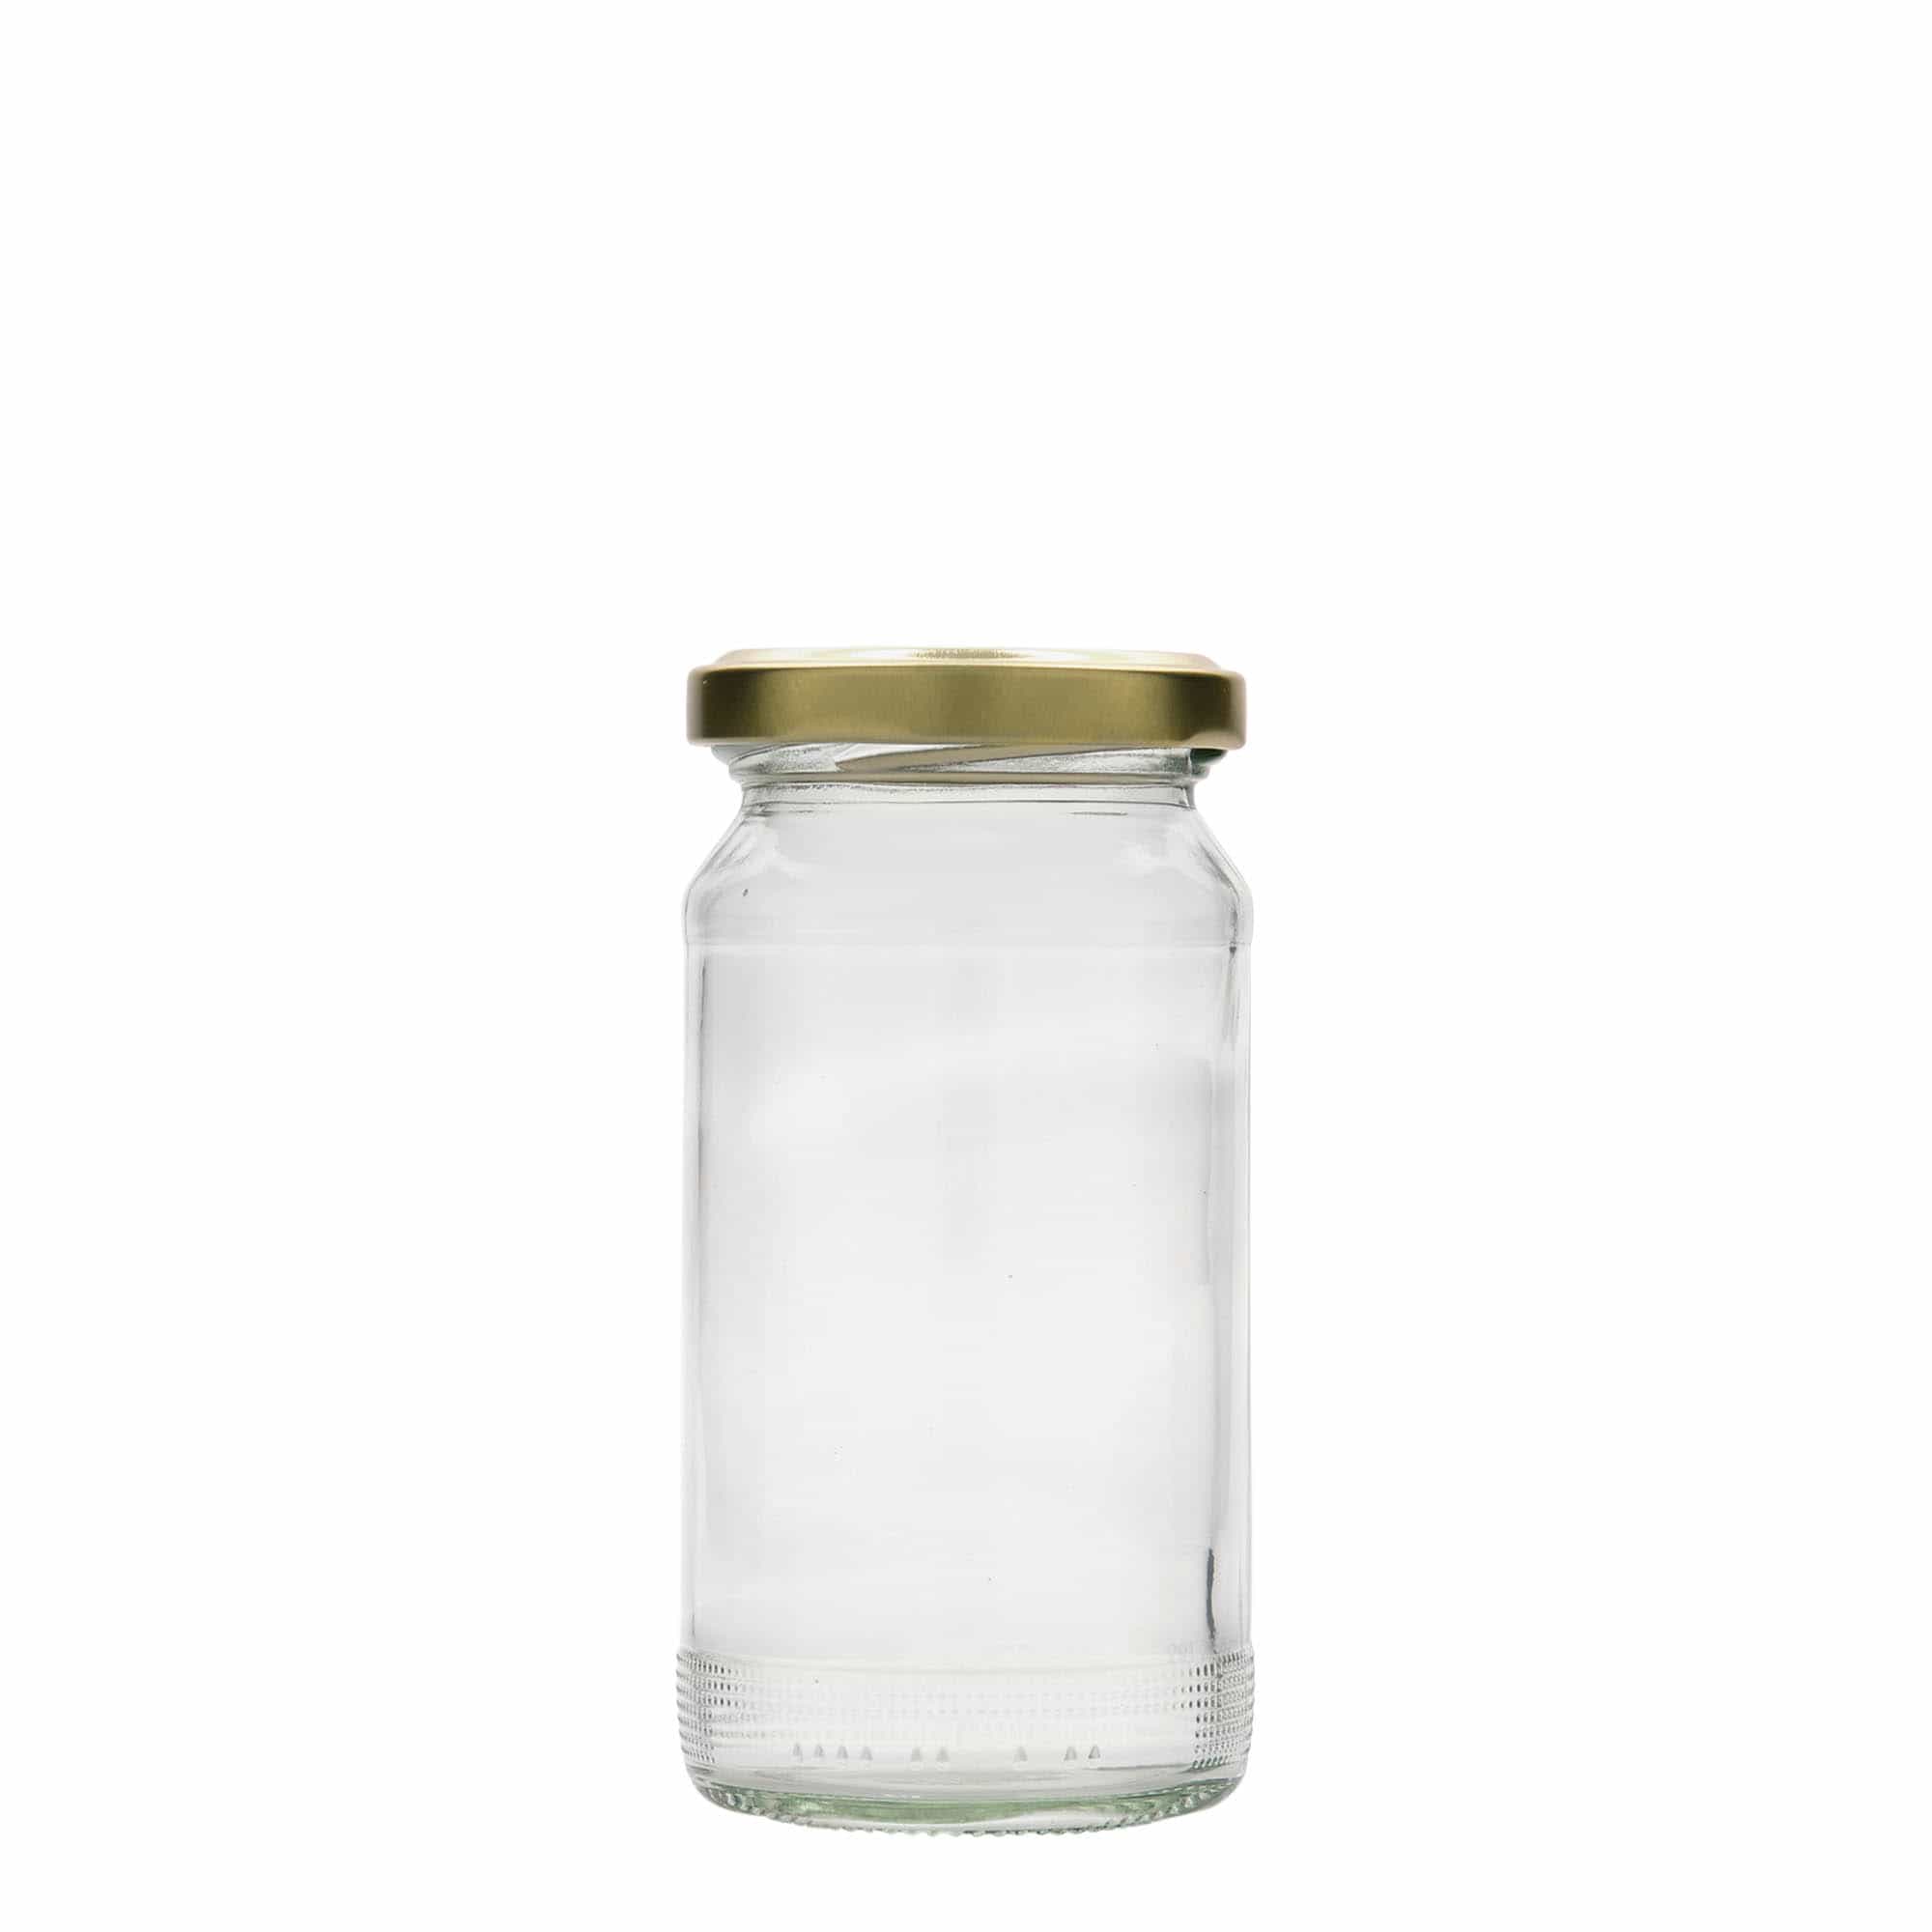 212 ml tall round jar, closure: twist off (TO 53)